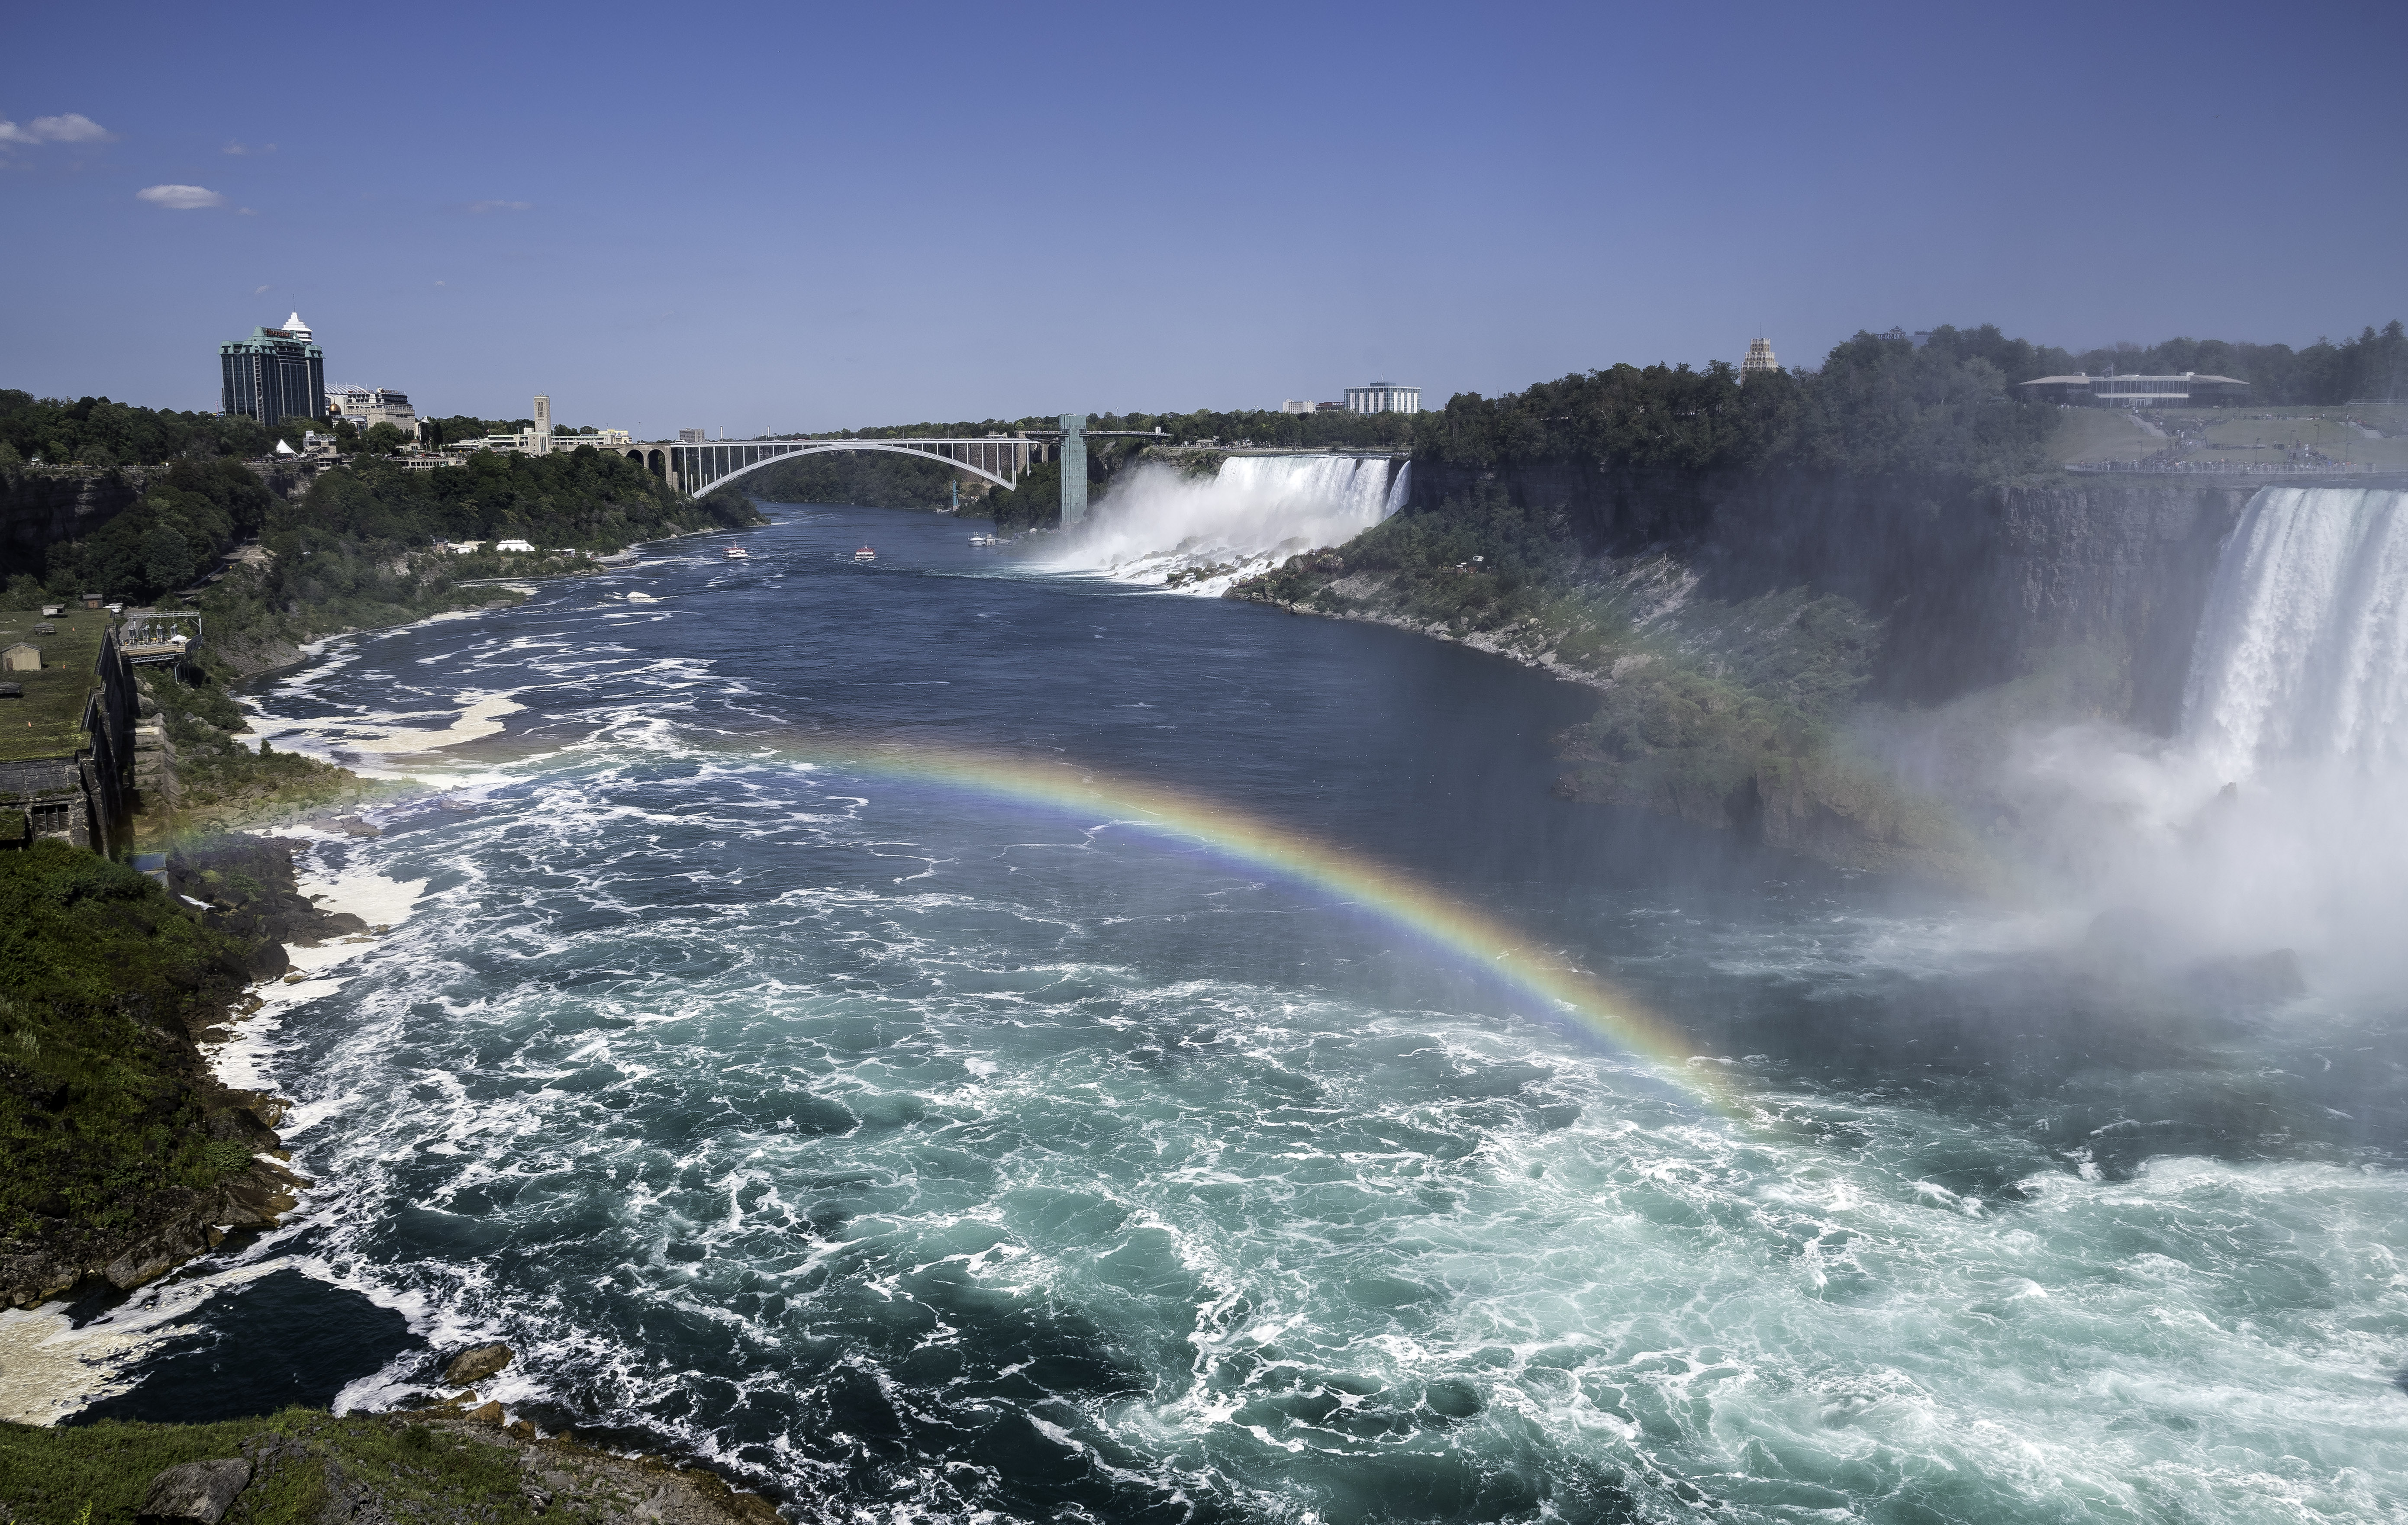 Крупнейший водопад северной америки. Ниагарский водопад Канада. Ниагара Фоллс Онтарио. Онтарио Канада Ниагарский водопад. Достопримечательности Канады Ниагарский водопад.